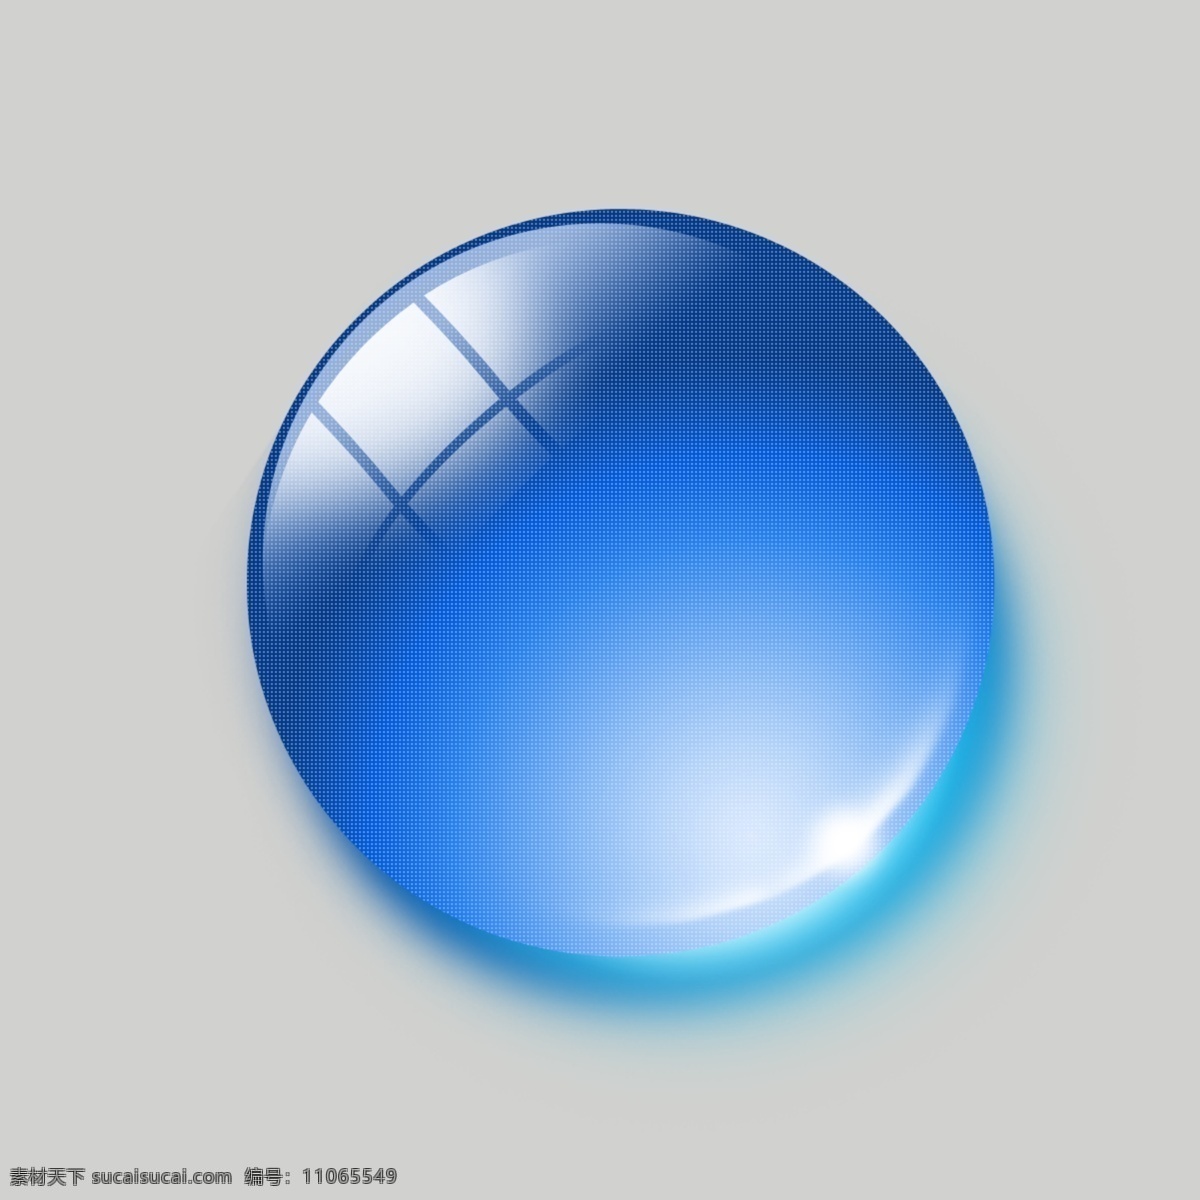 分层 高清 界面设计 蓝色 球体 水晶 透明 源文件 质感 水晶球 模板下载 网页素材 网页界面设计